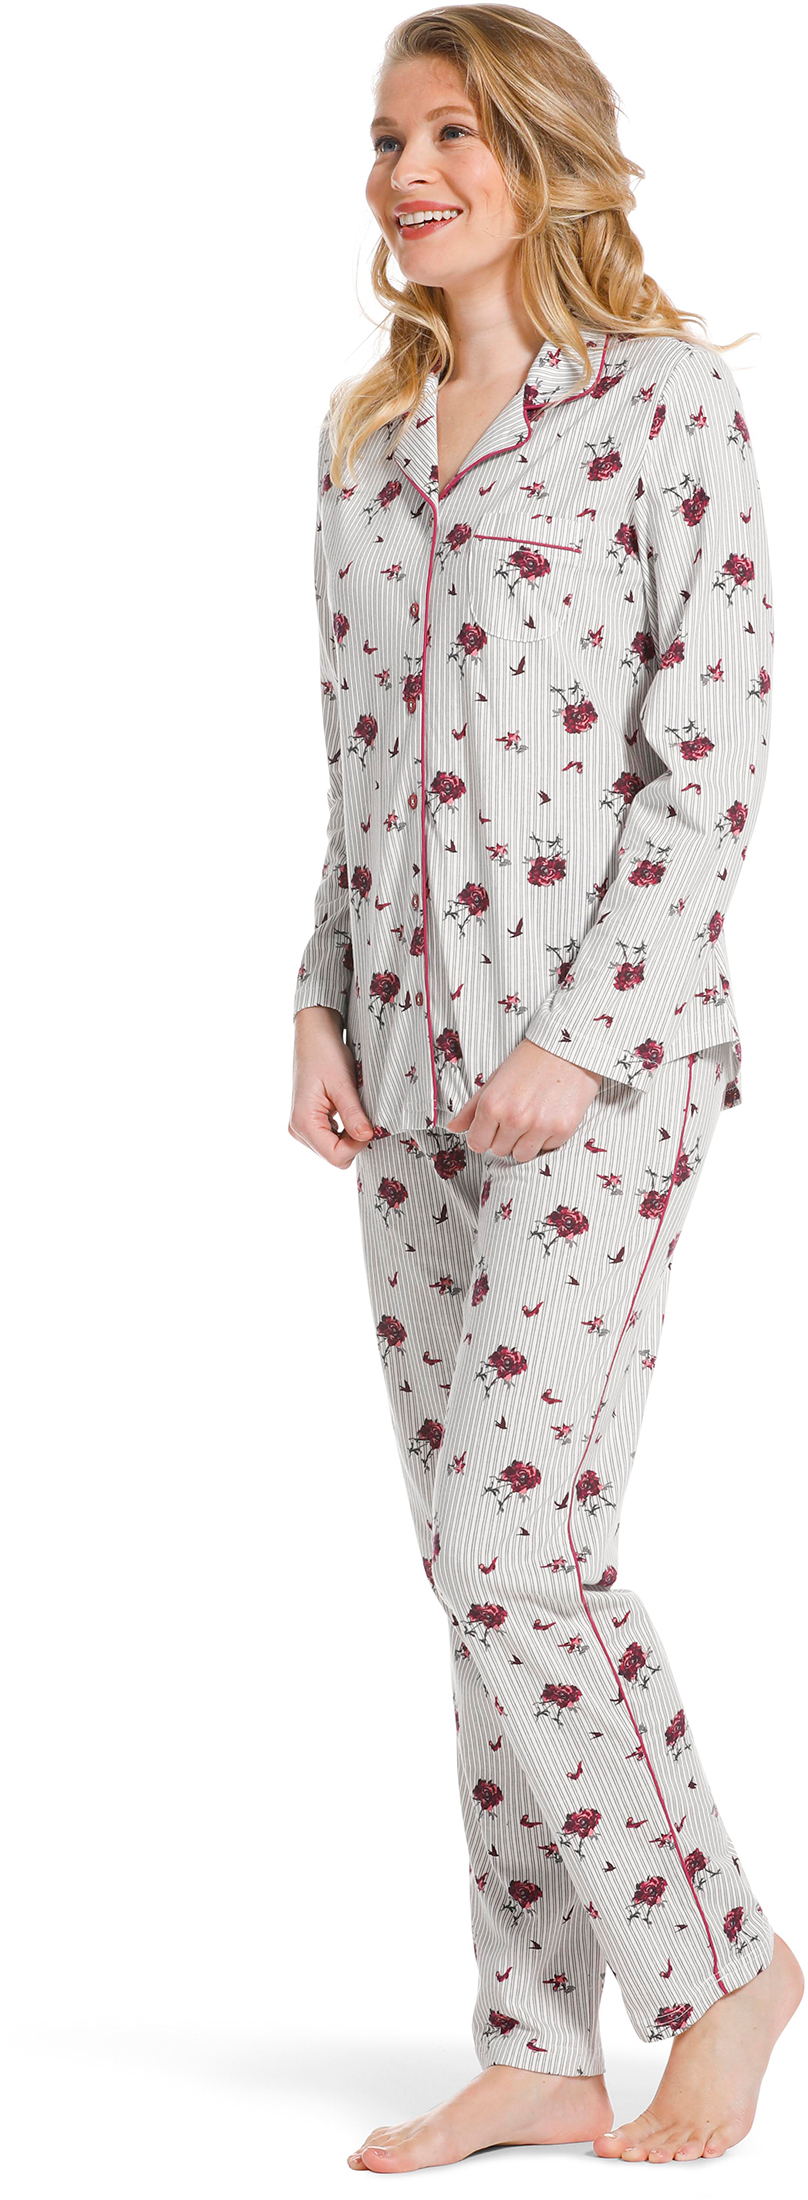 Pastunette doorknoop dames pyjama 20222-156-6 - Grijs - 50